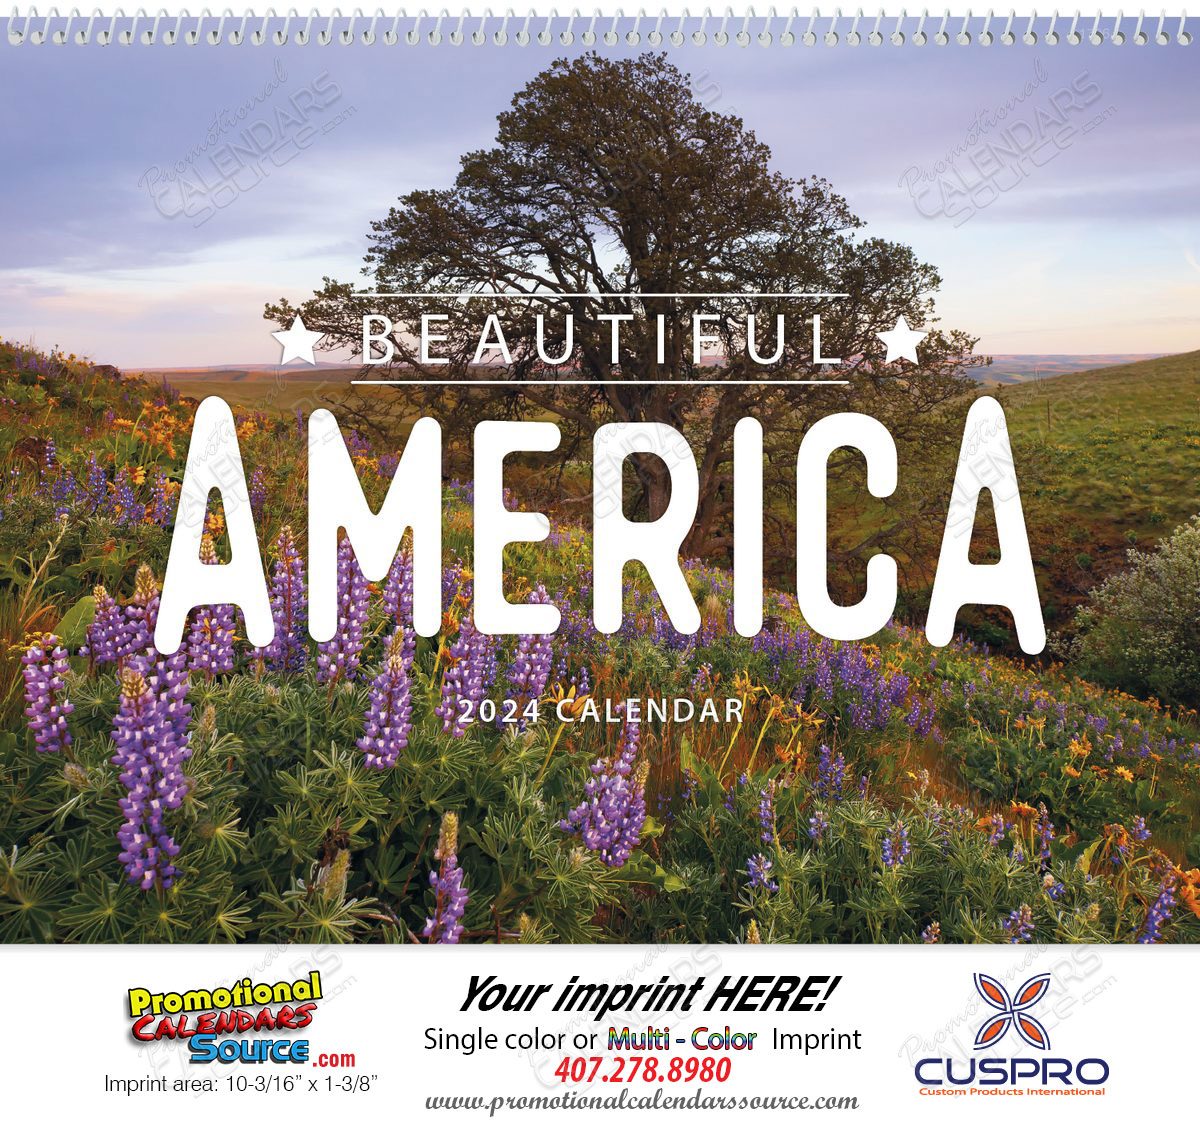 Beautiful America Promotional Calendar 